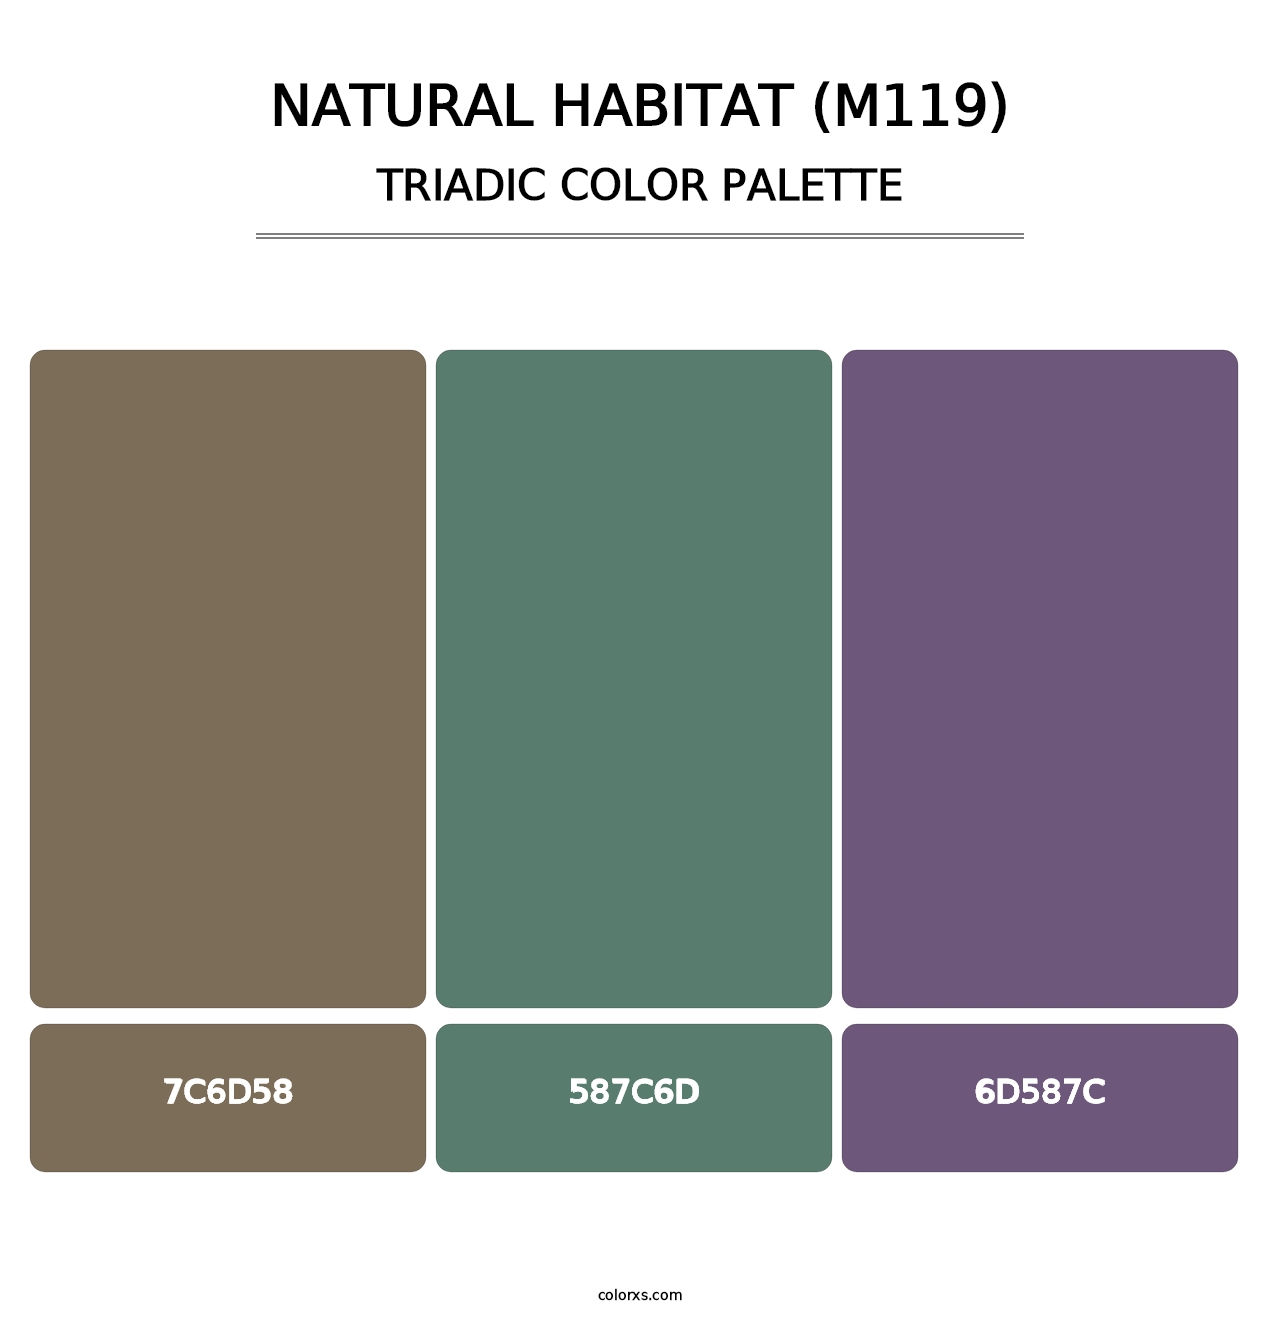 Natural Habitat (M119) - Triadic Color Palette